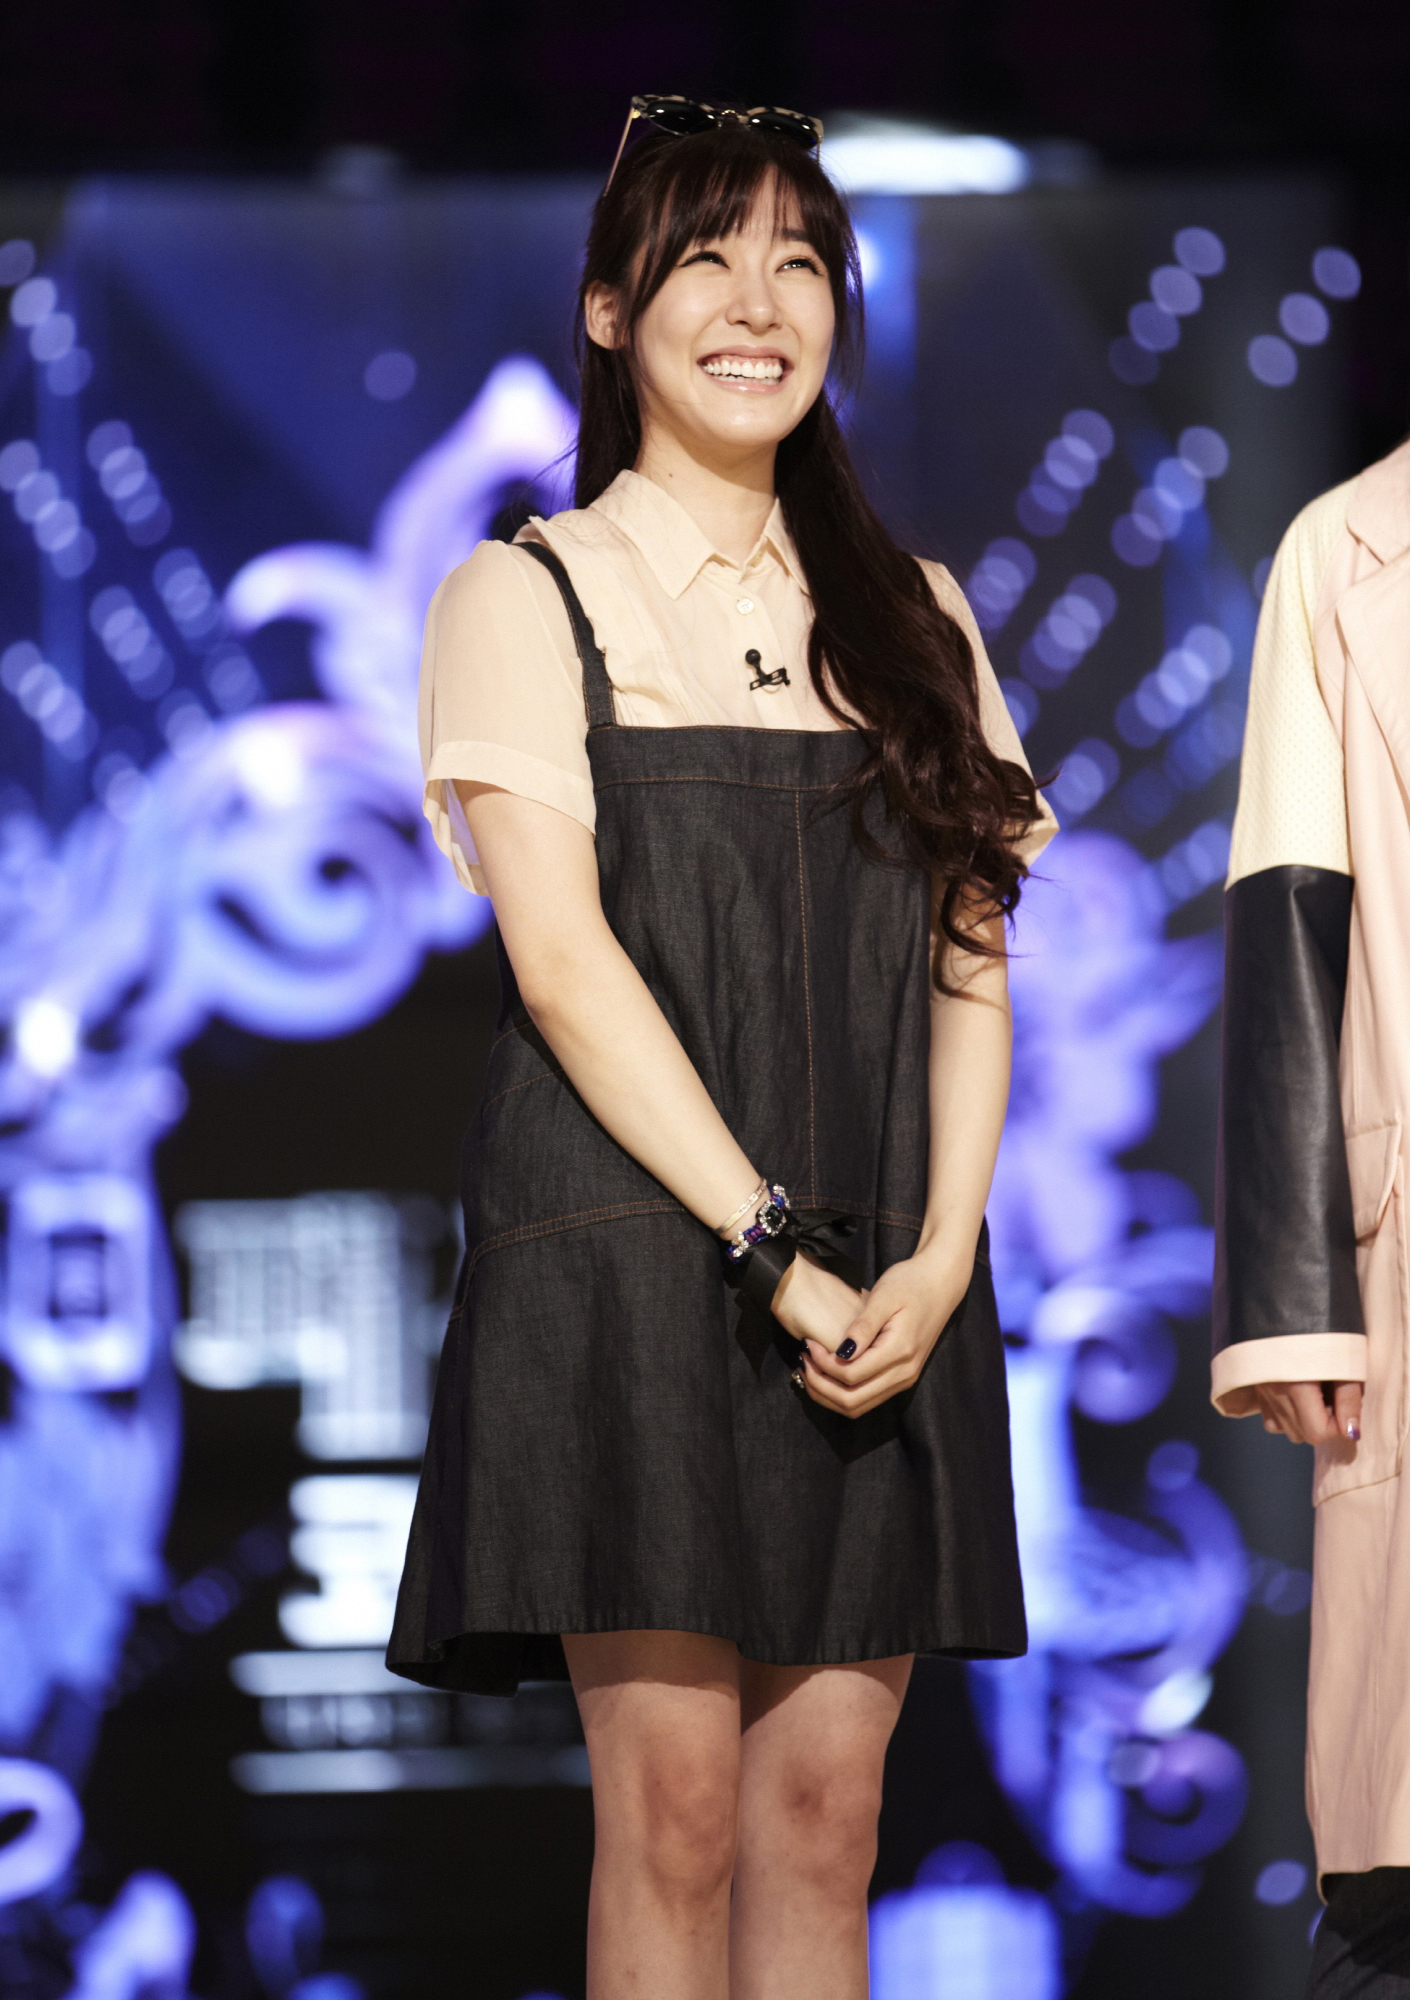 [OTHER][04-10-2013]Hình ảnh mới nhất từ chương trình "Fashion King Korea" của Tiffany 2548E747526F0F312B6AA6